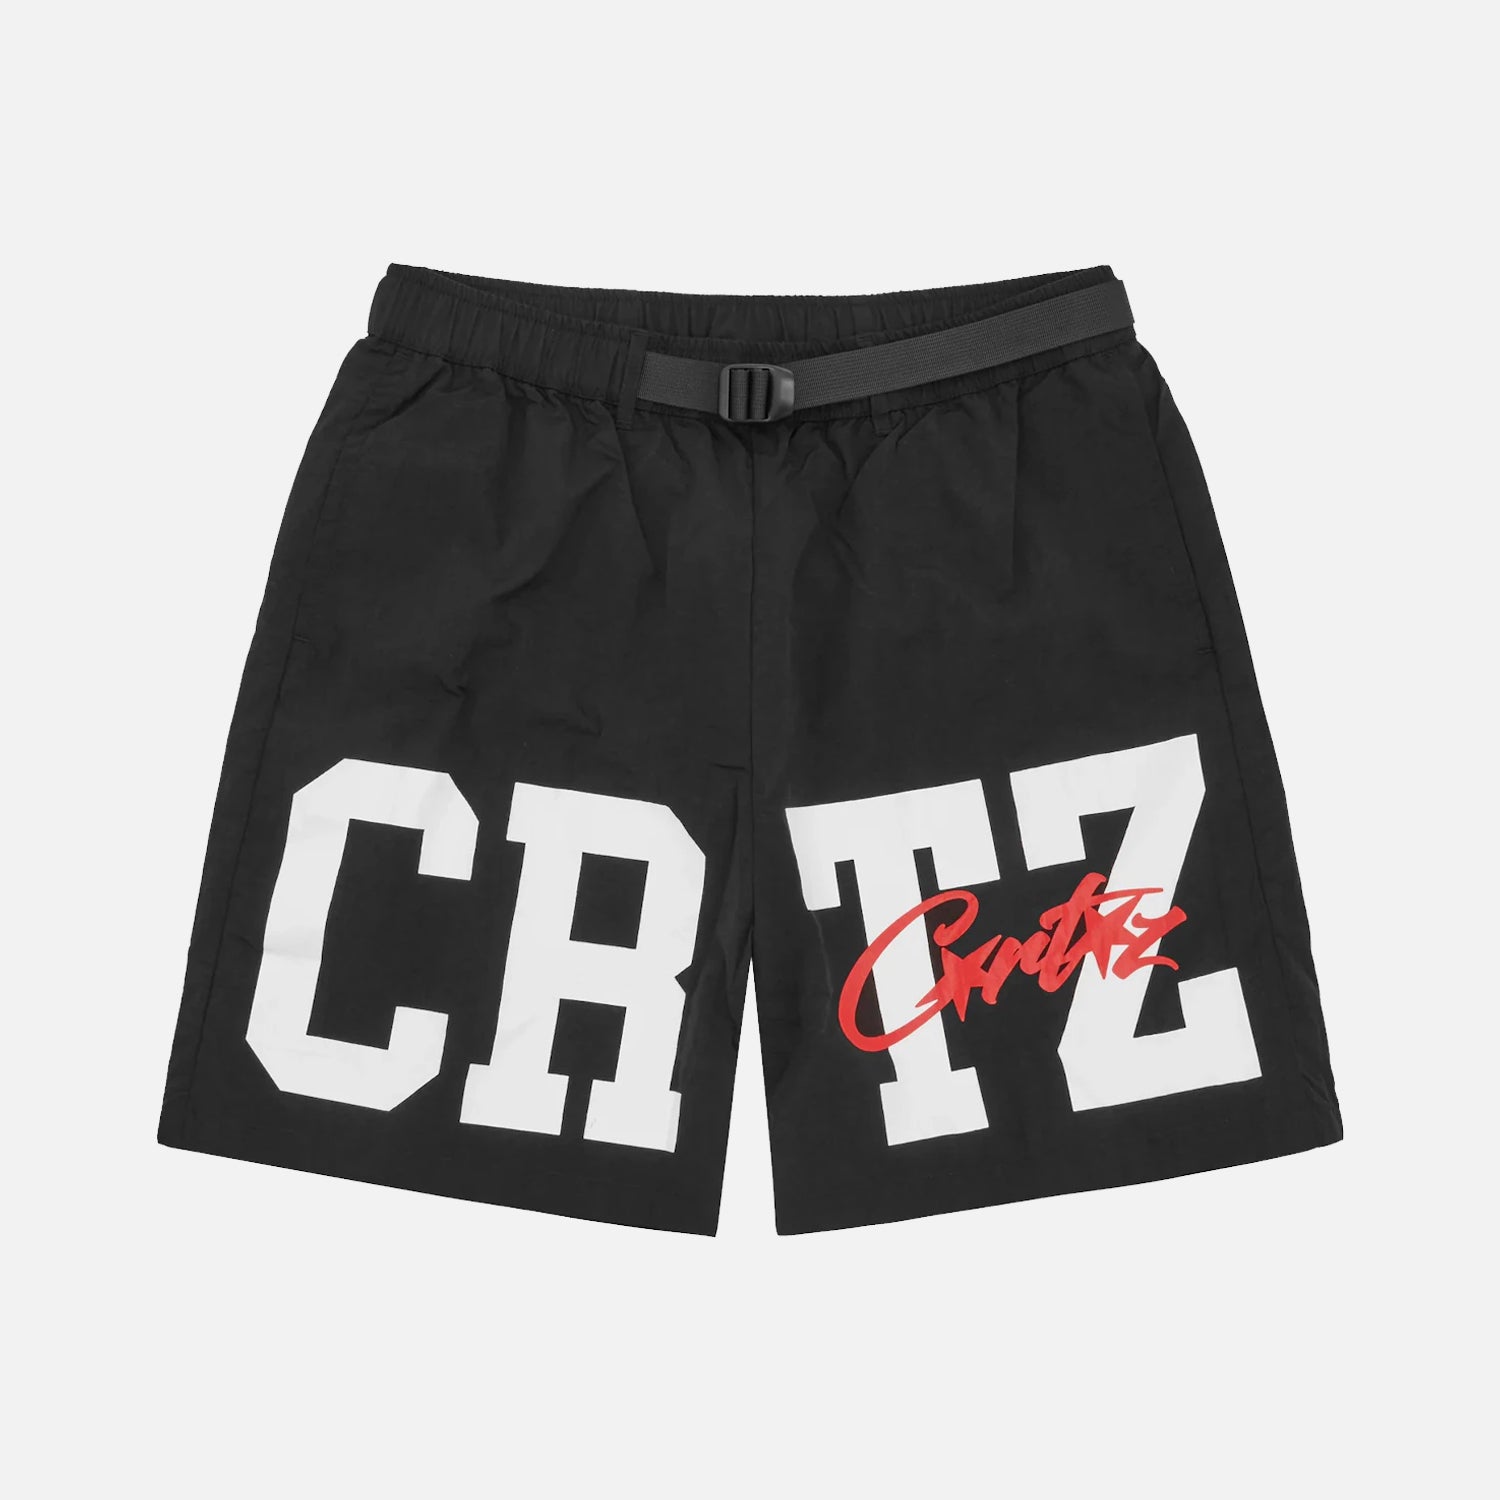 Corteiz RTW Crtz Nylon Shorts - Black / White